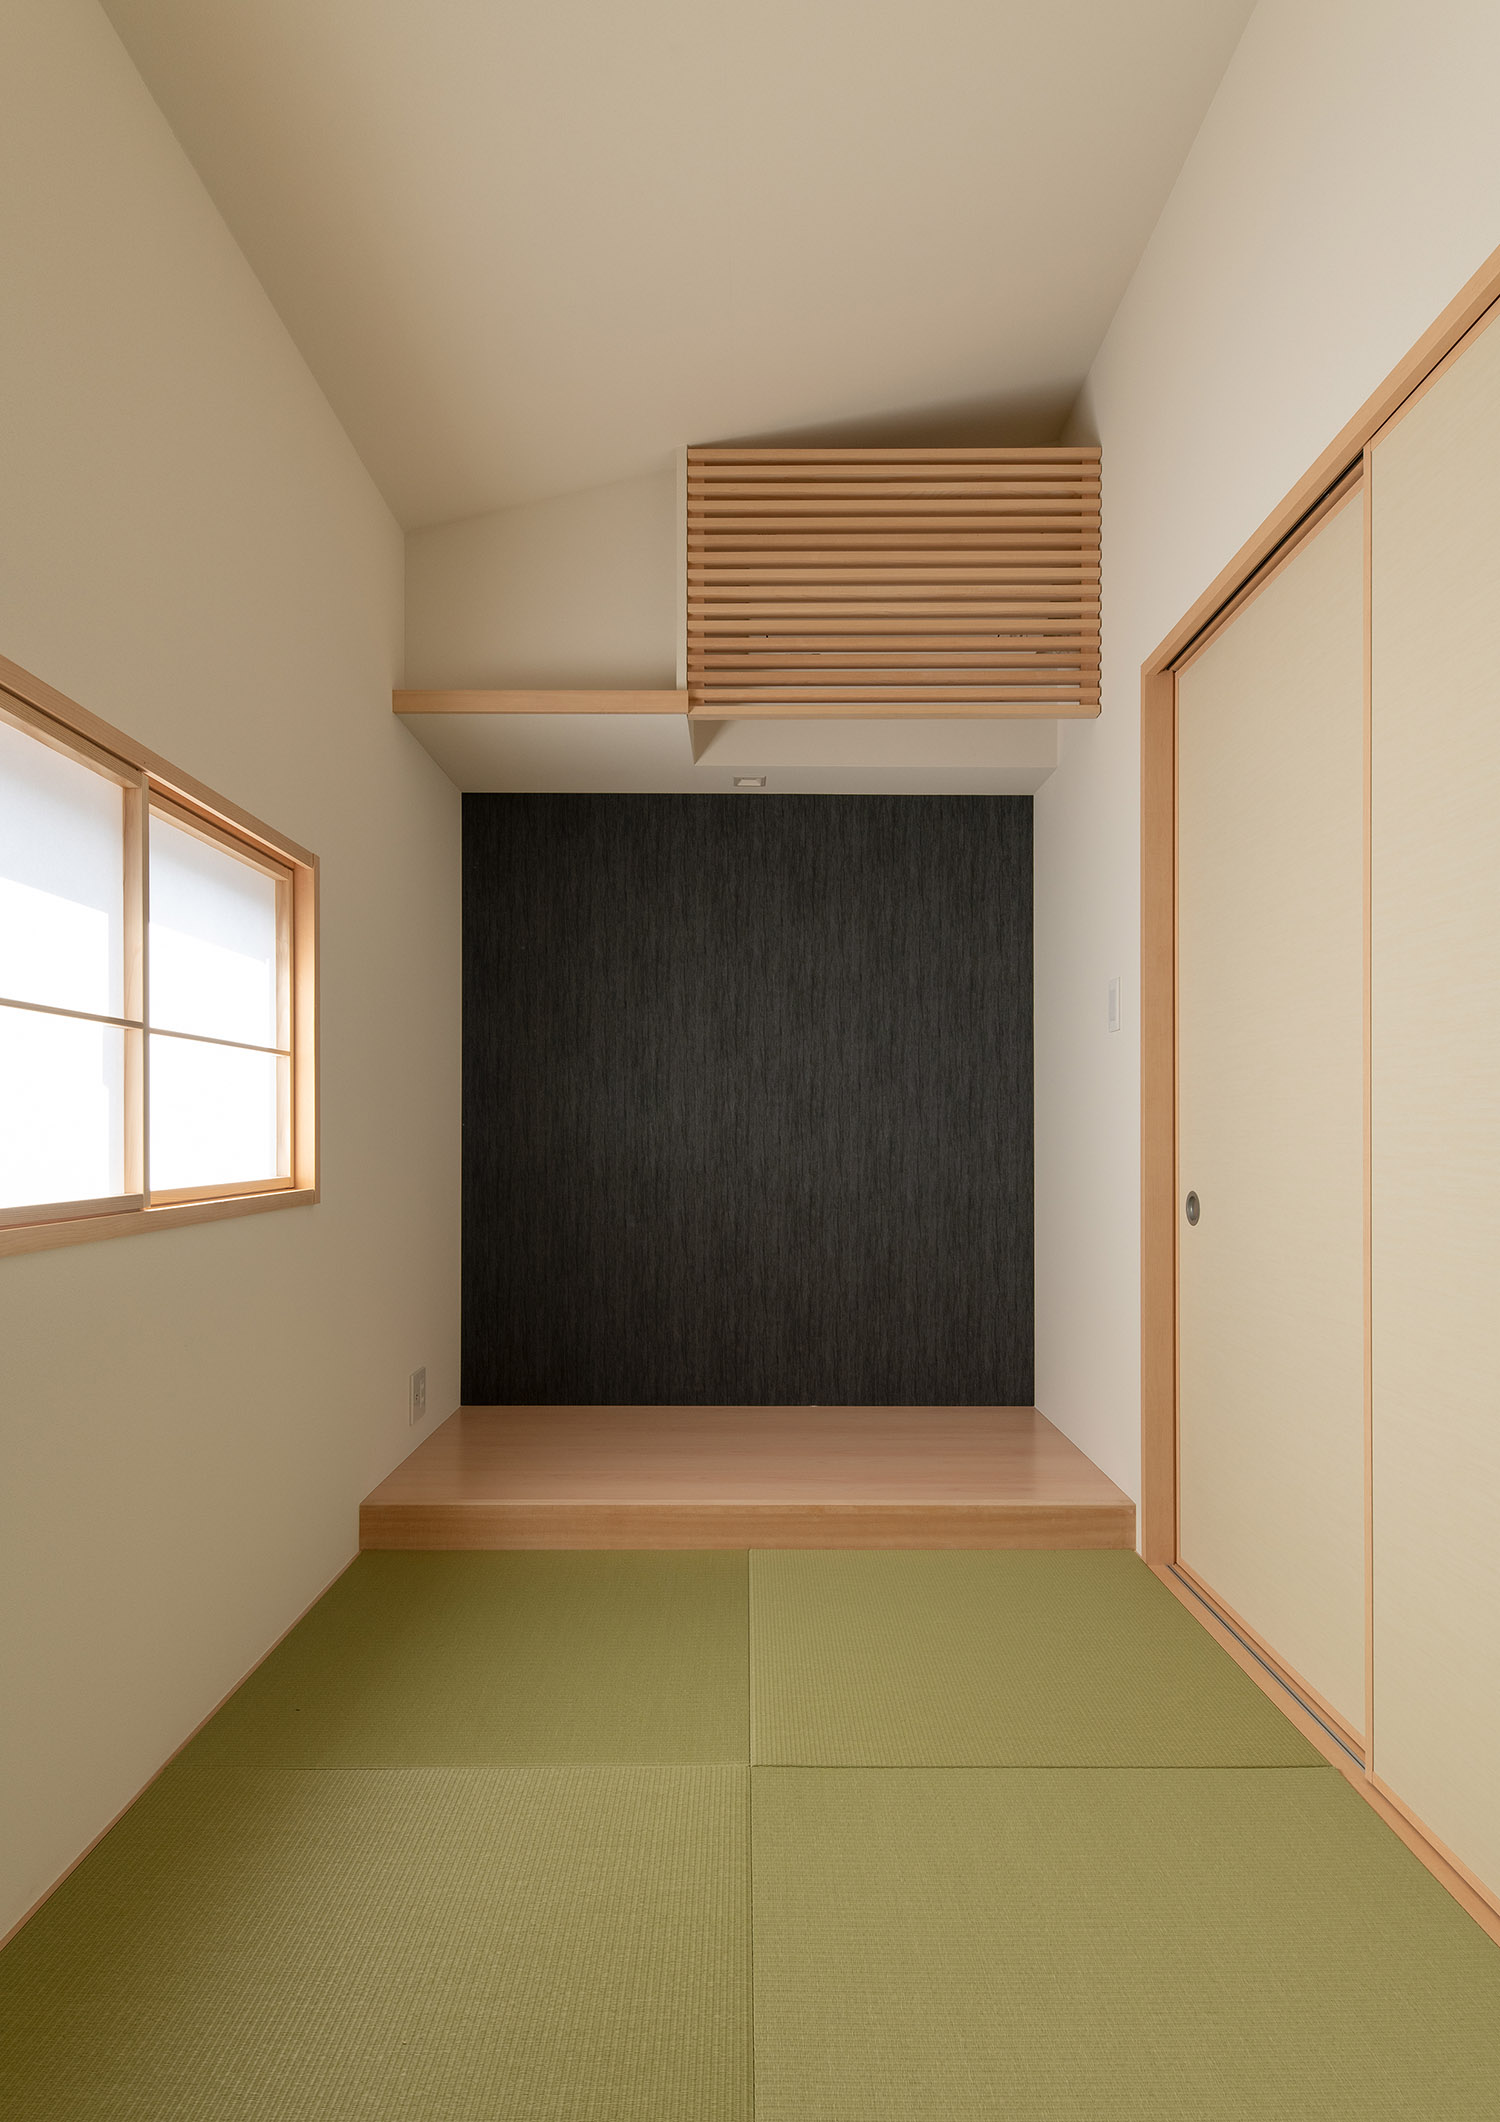 床の間や障子の窓がある琉球畳の和室・デザイン住宅